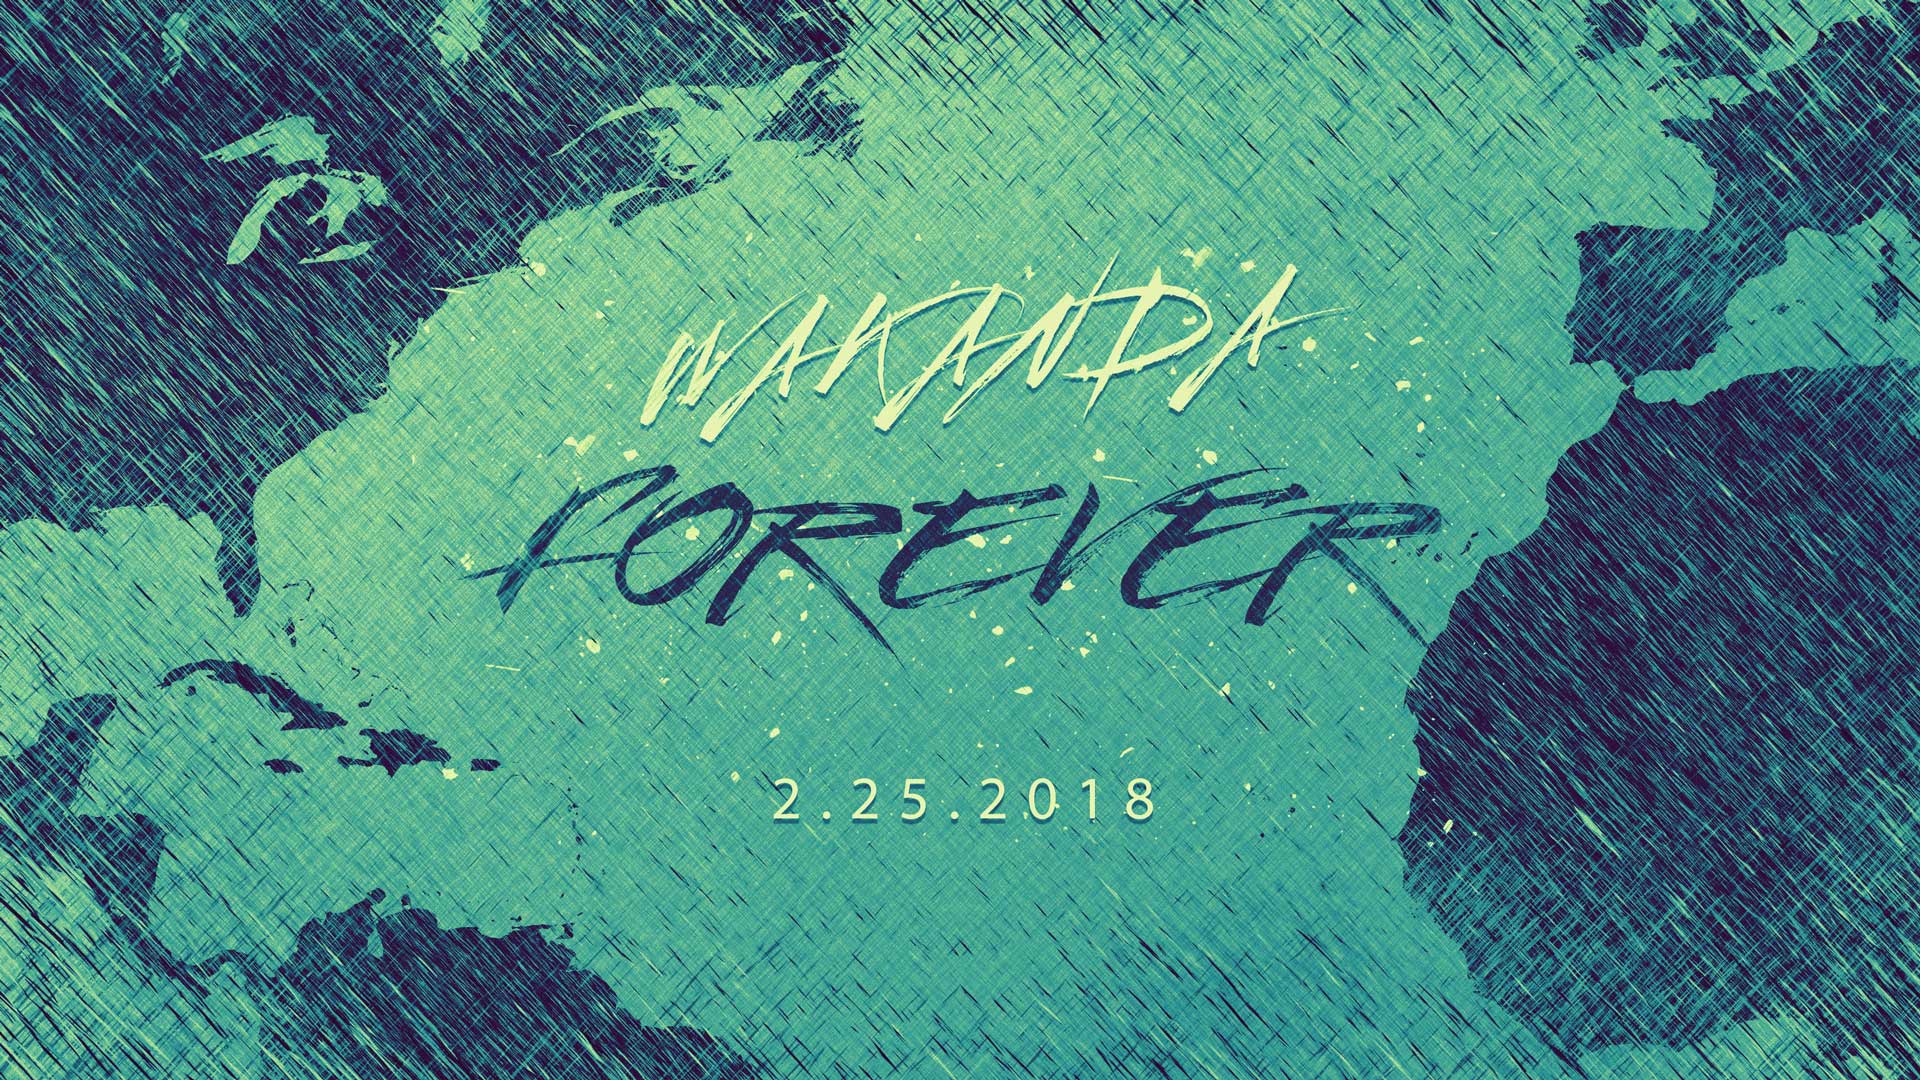 Mt. Ennon Baptist Church. Wakanda Forever 2.25.2018. “Wakanda